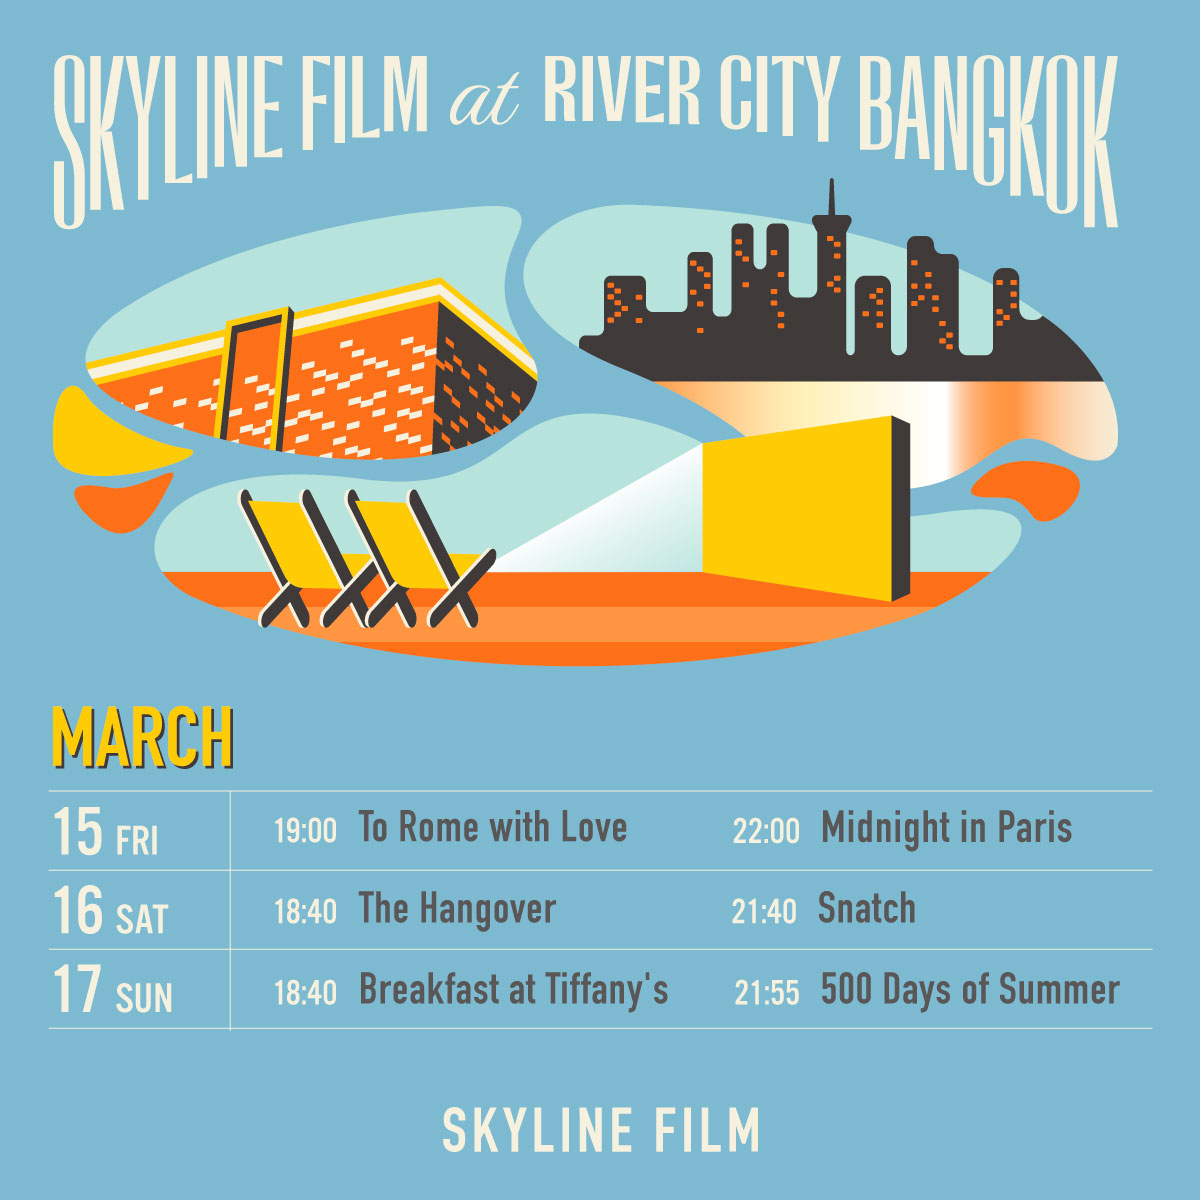 ชวนแฟนไปกัน ดูหนังบนดาดฟ้าวิวแม่น้ำเจ้าพระยา 15-17 มีนาคมนี้ ที่ River City Bangkok